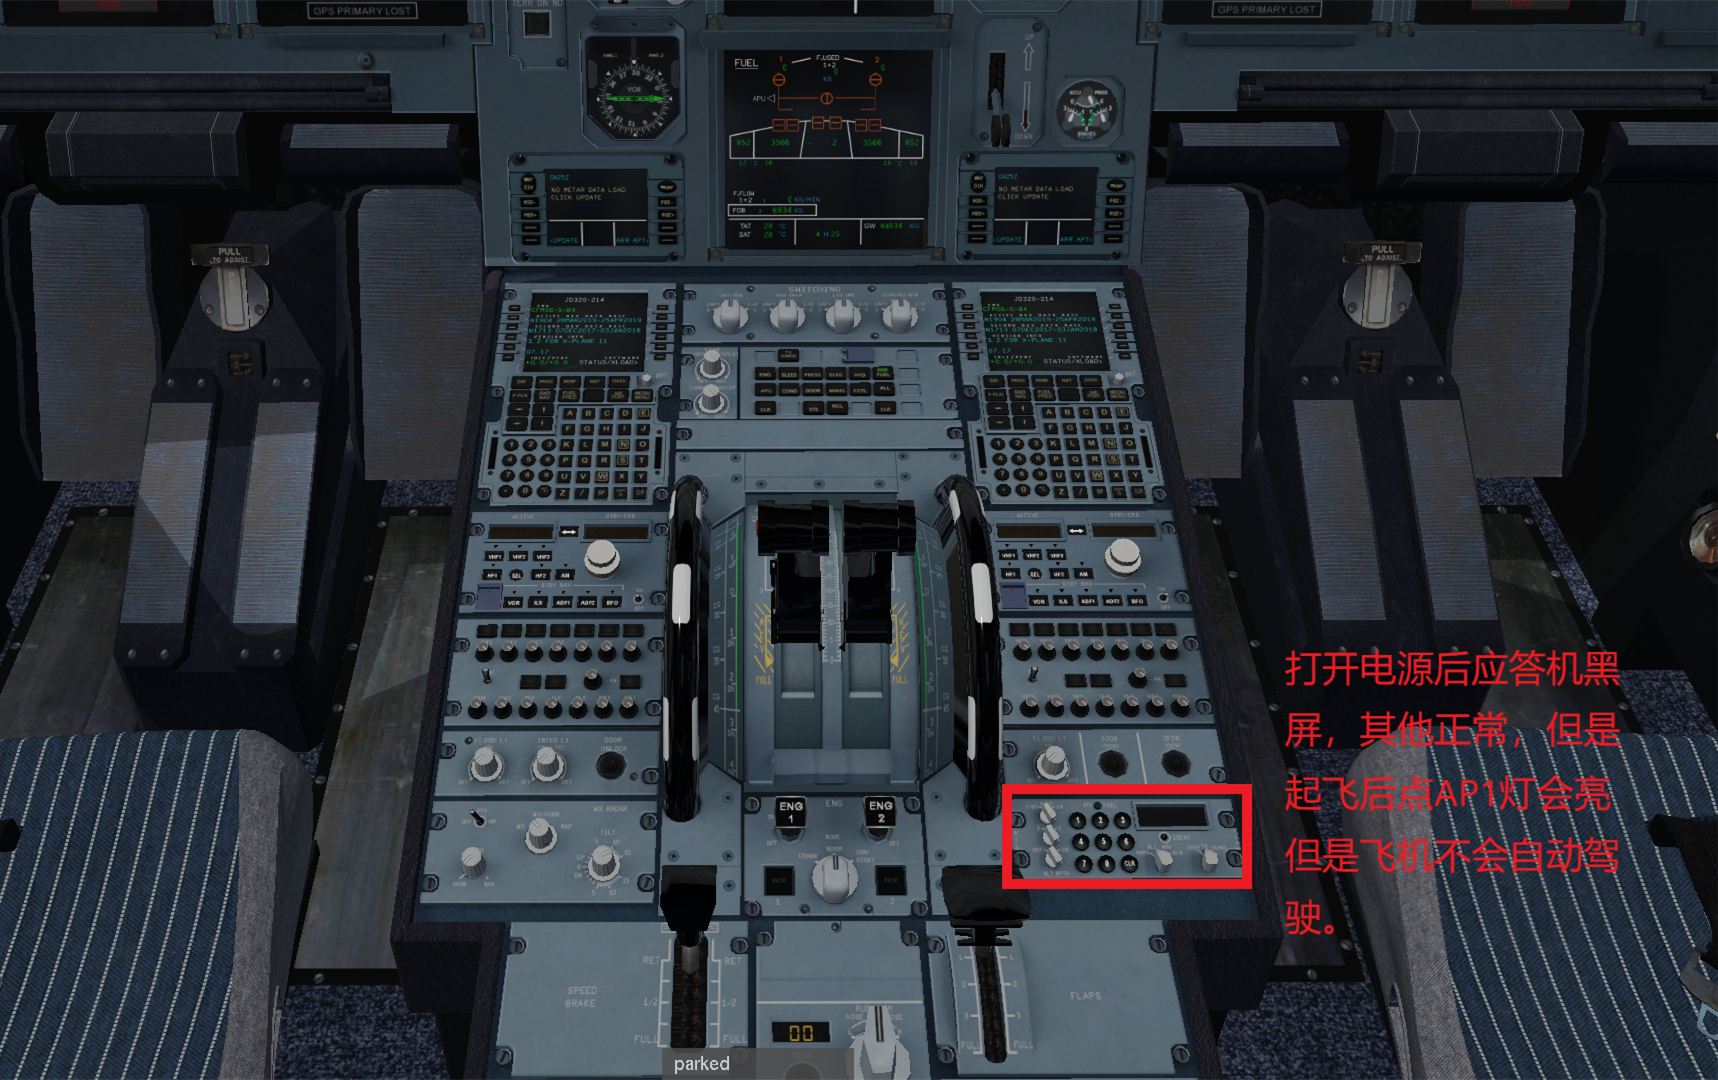 JARD A320  不能导航应答机黑屏的解决办法-944 